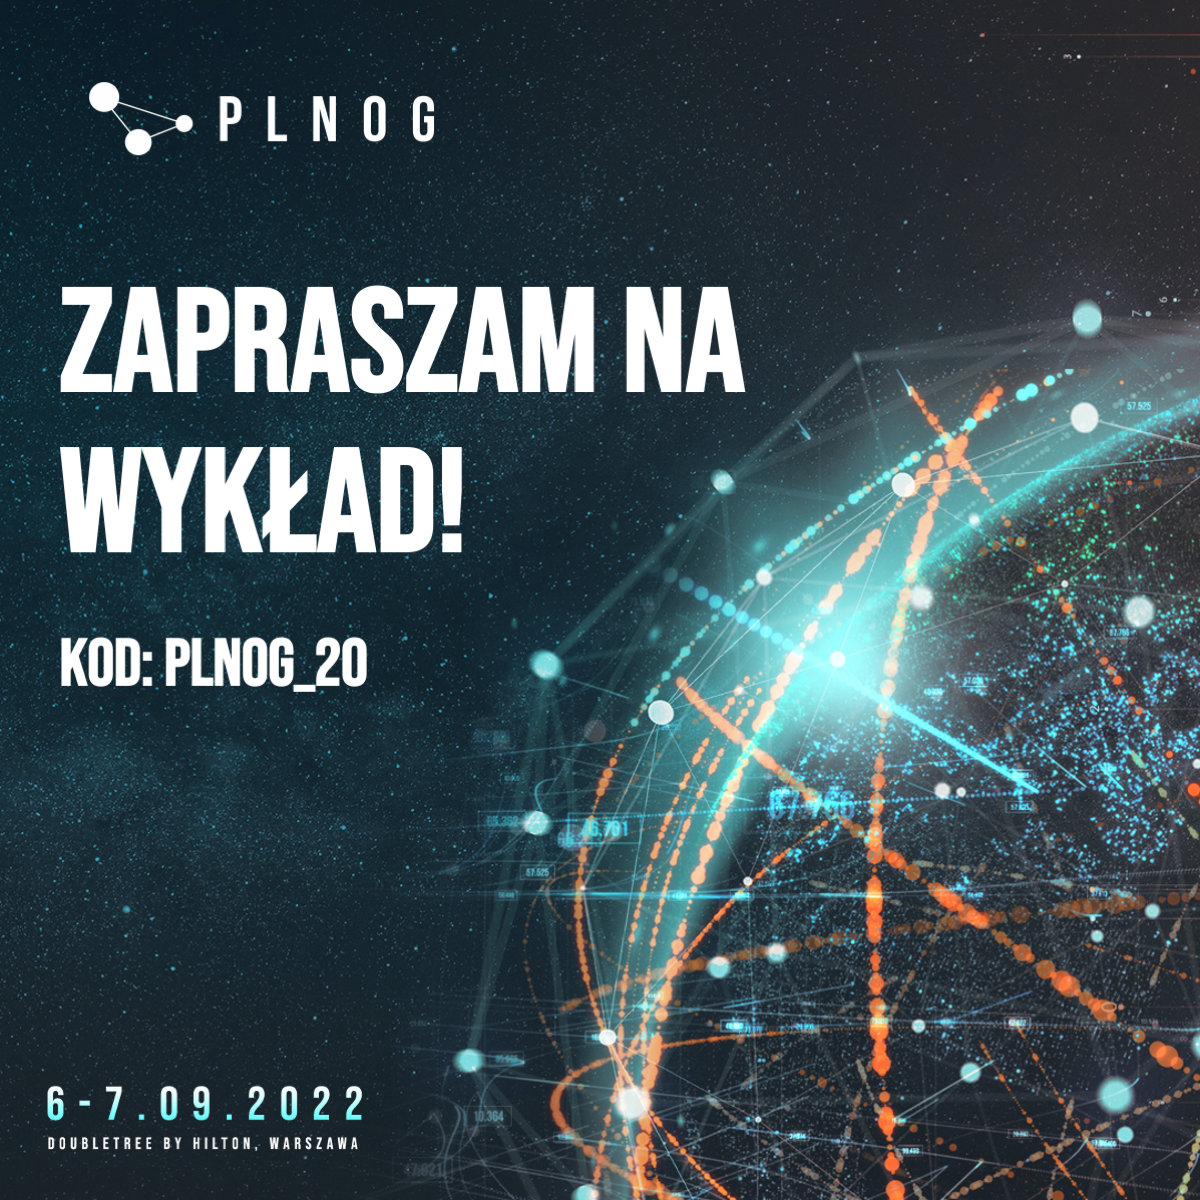 PLNOG 30